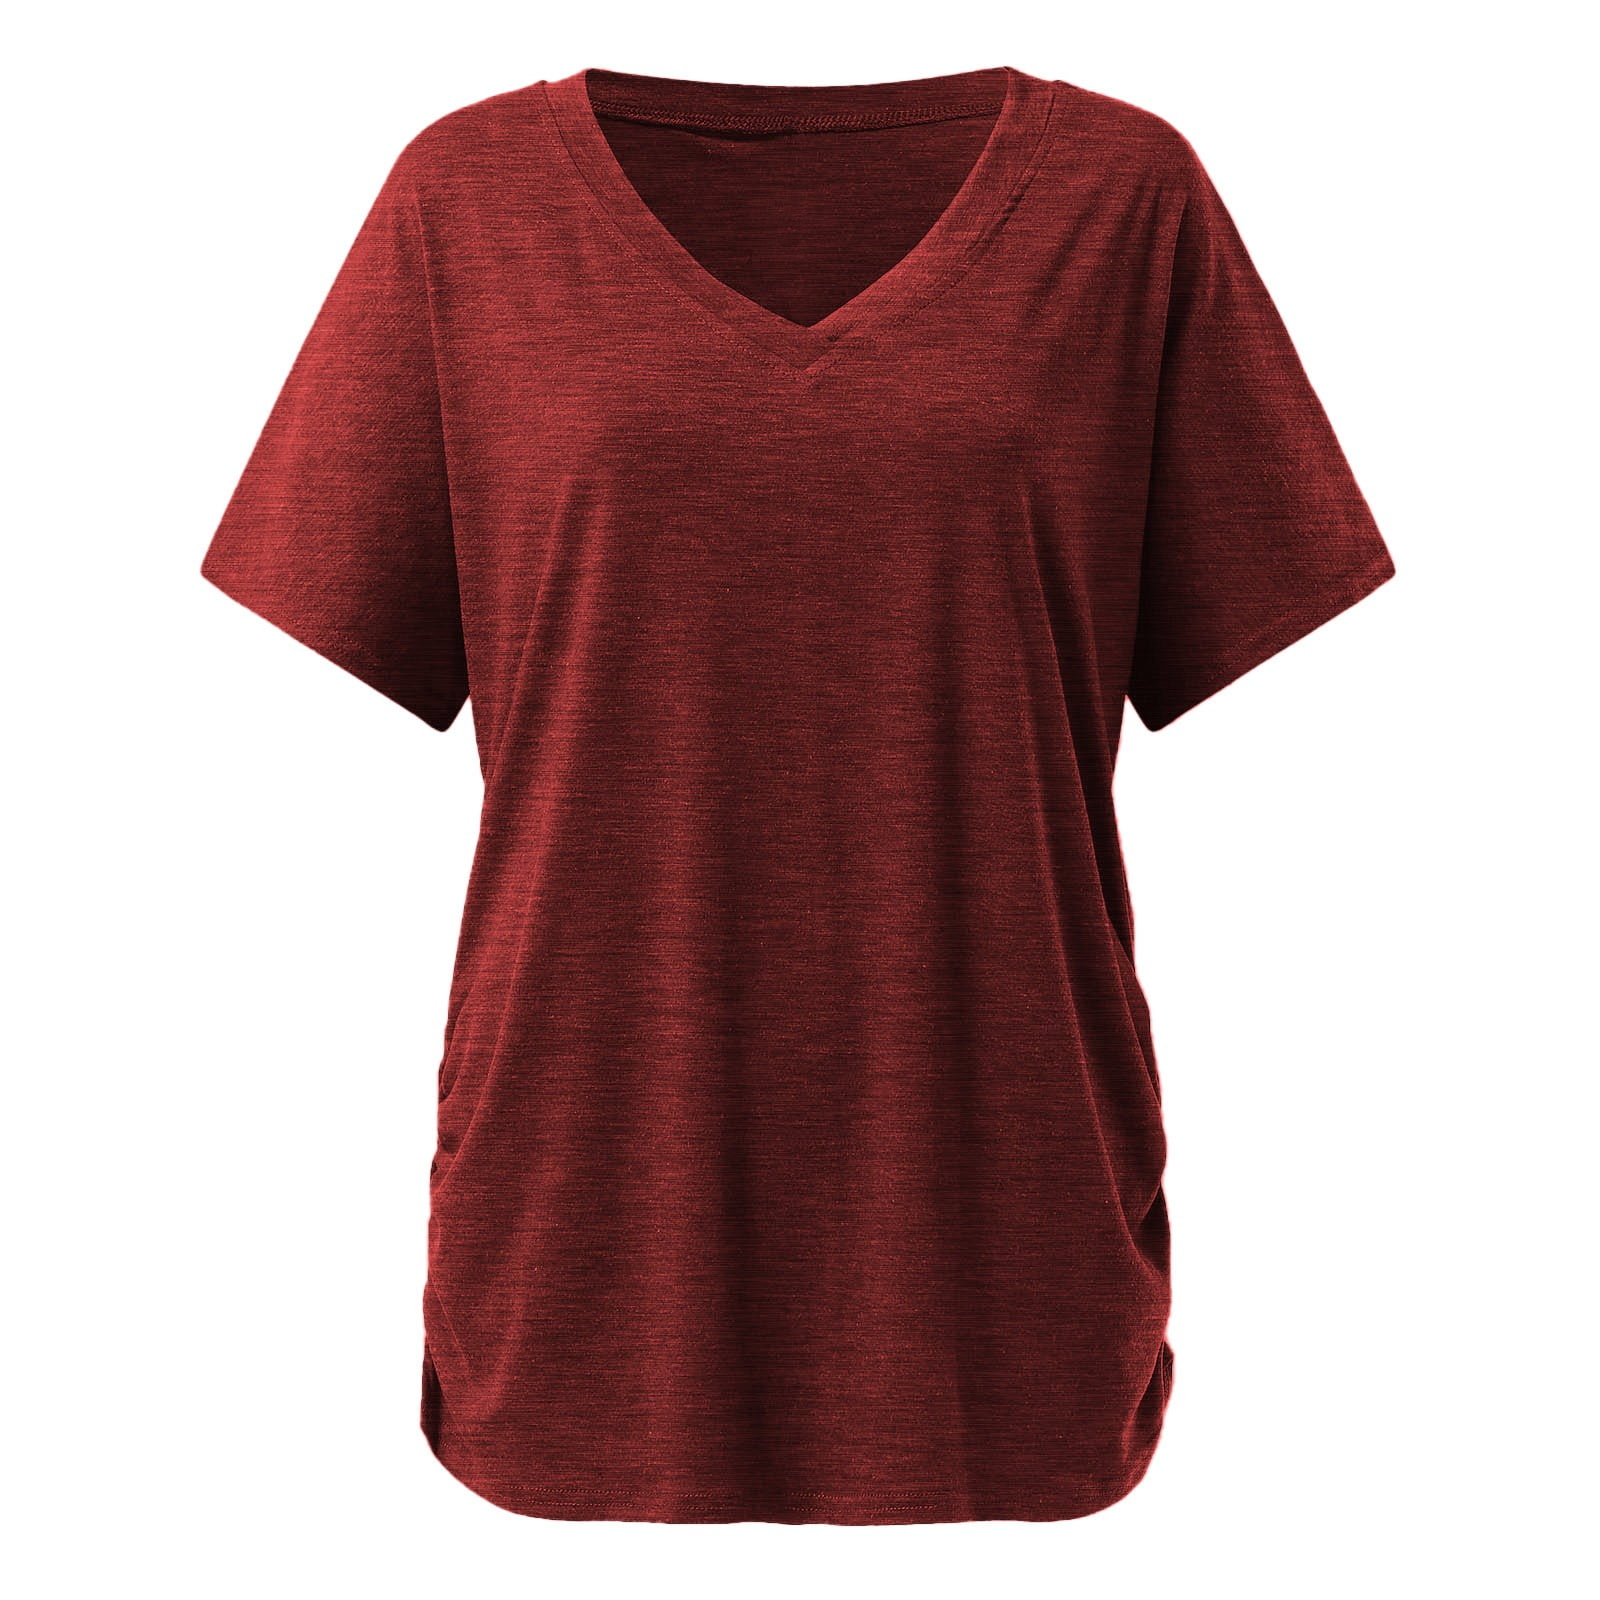 Short Sleeve V-Neck Plain Color Soft Loose Fitting Summer T-Shirts